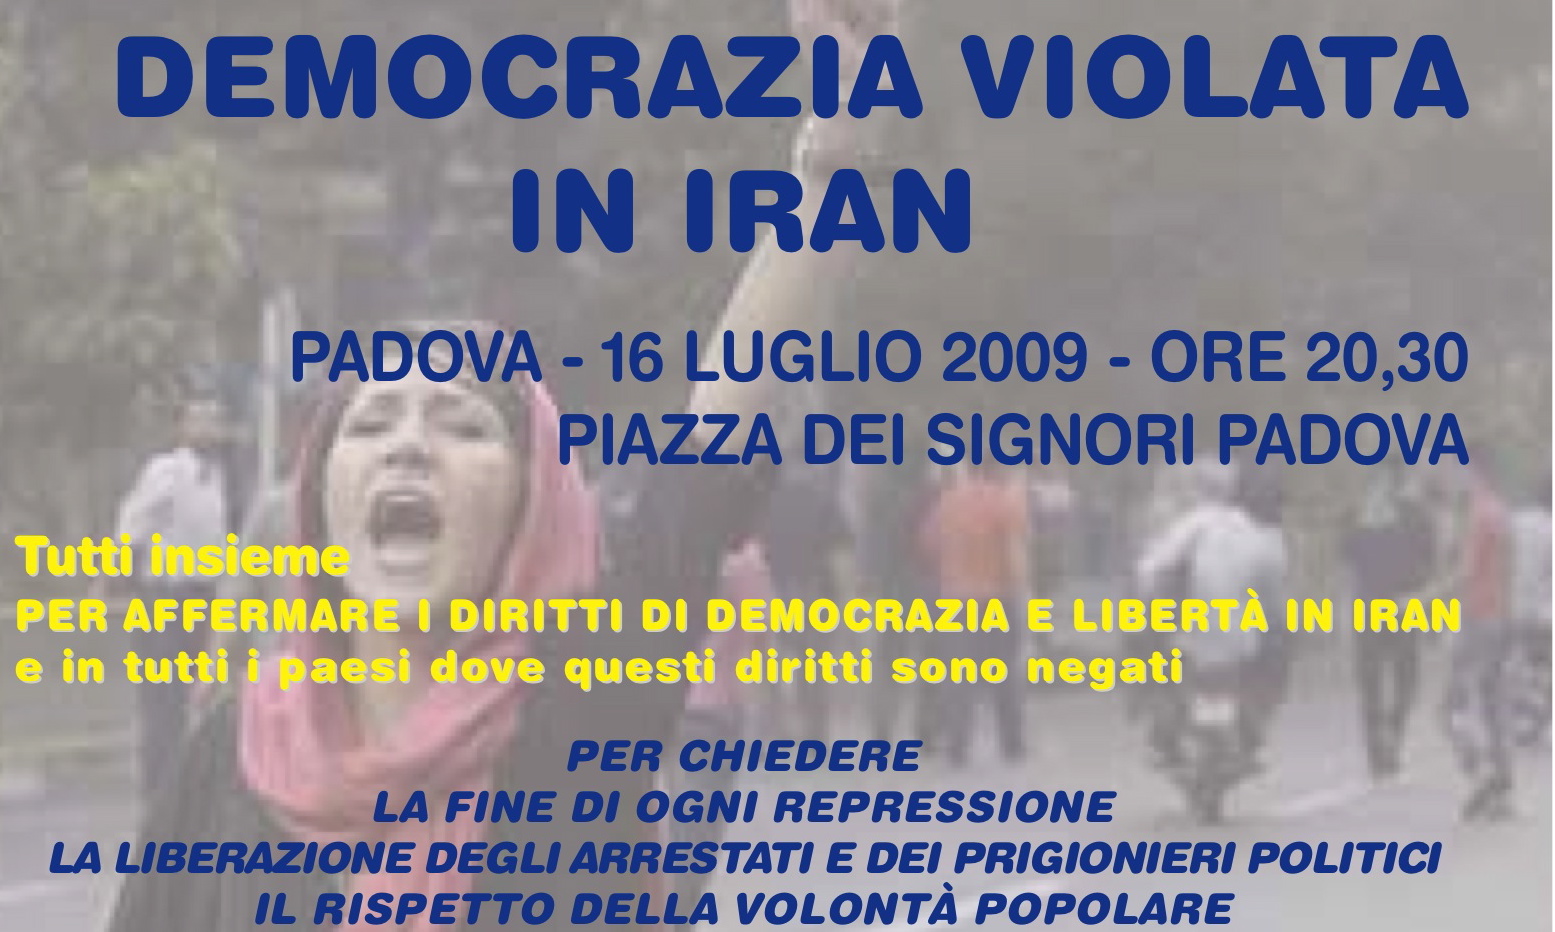 Oggi a Padova per il diritto alla democrazia violata in Iran